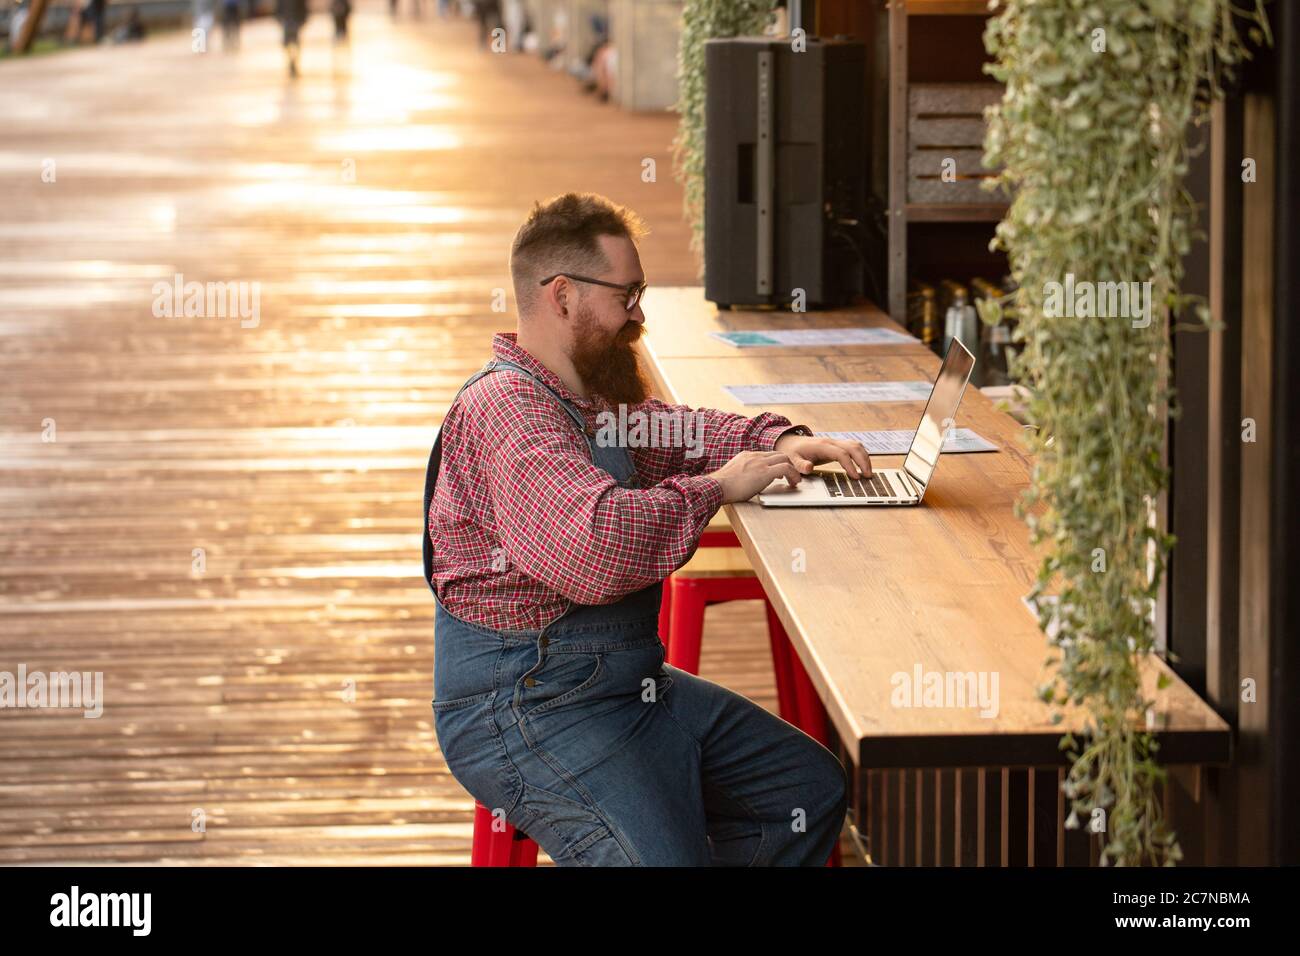 Portrait d'un boxeur hippster freelance à barbes, portant une combinaison bleue et une chemise à carreaux, travaillant sur un ordinateur portable assis dans un café/restaurant à l'extérieur. Côté Banque D'Images